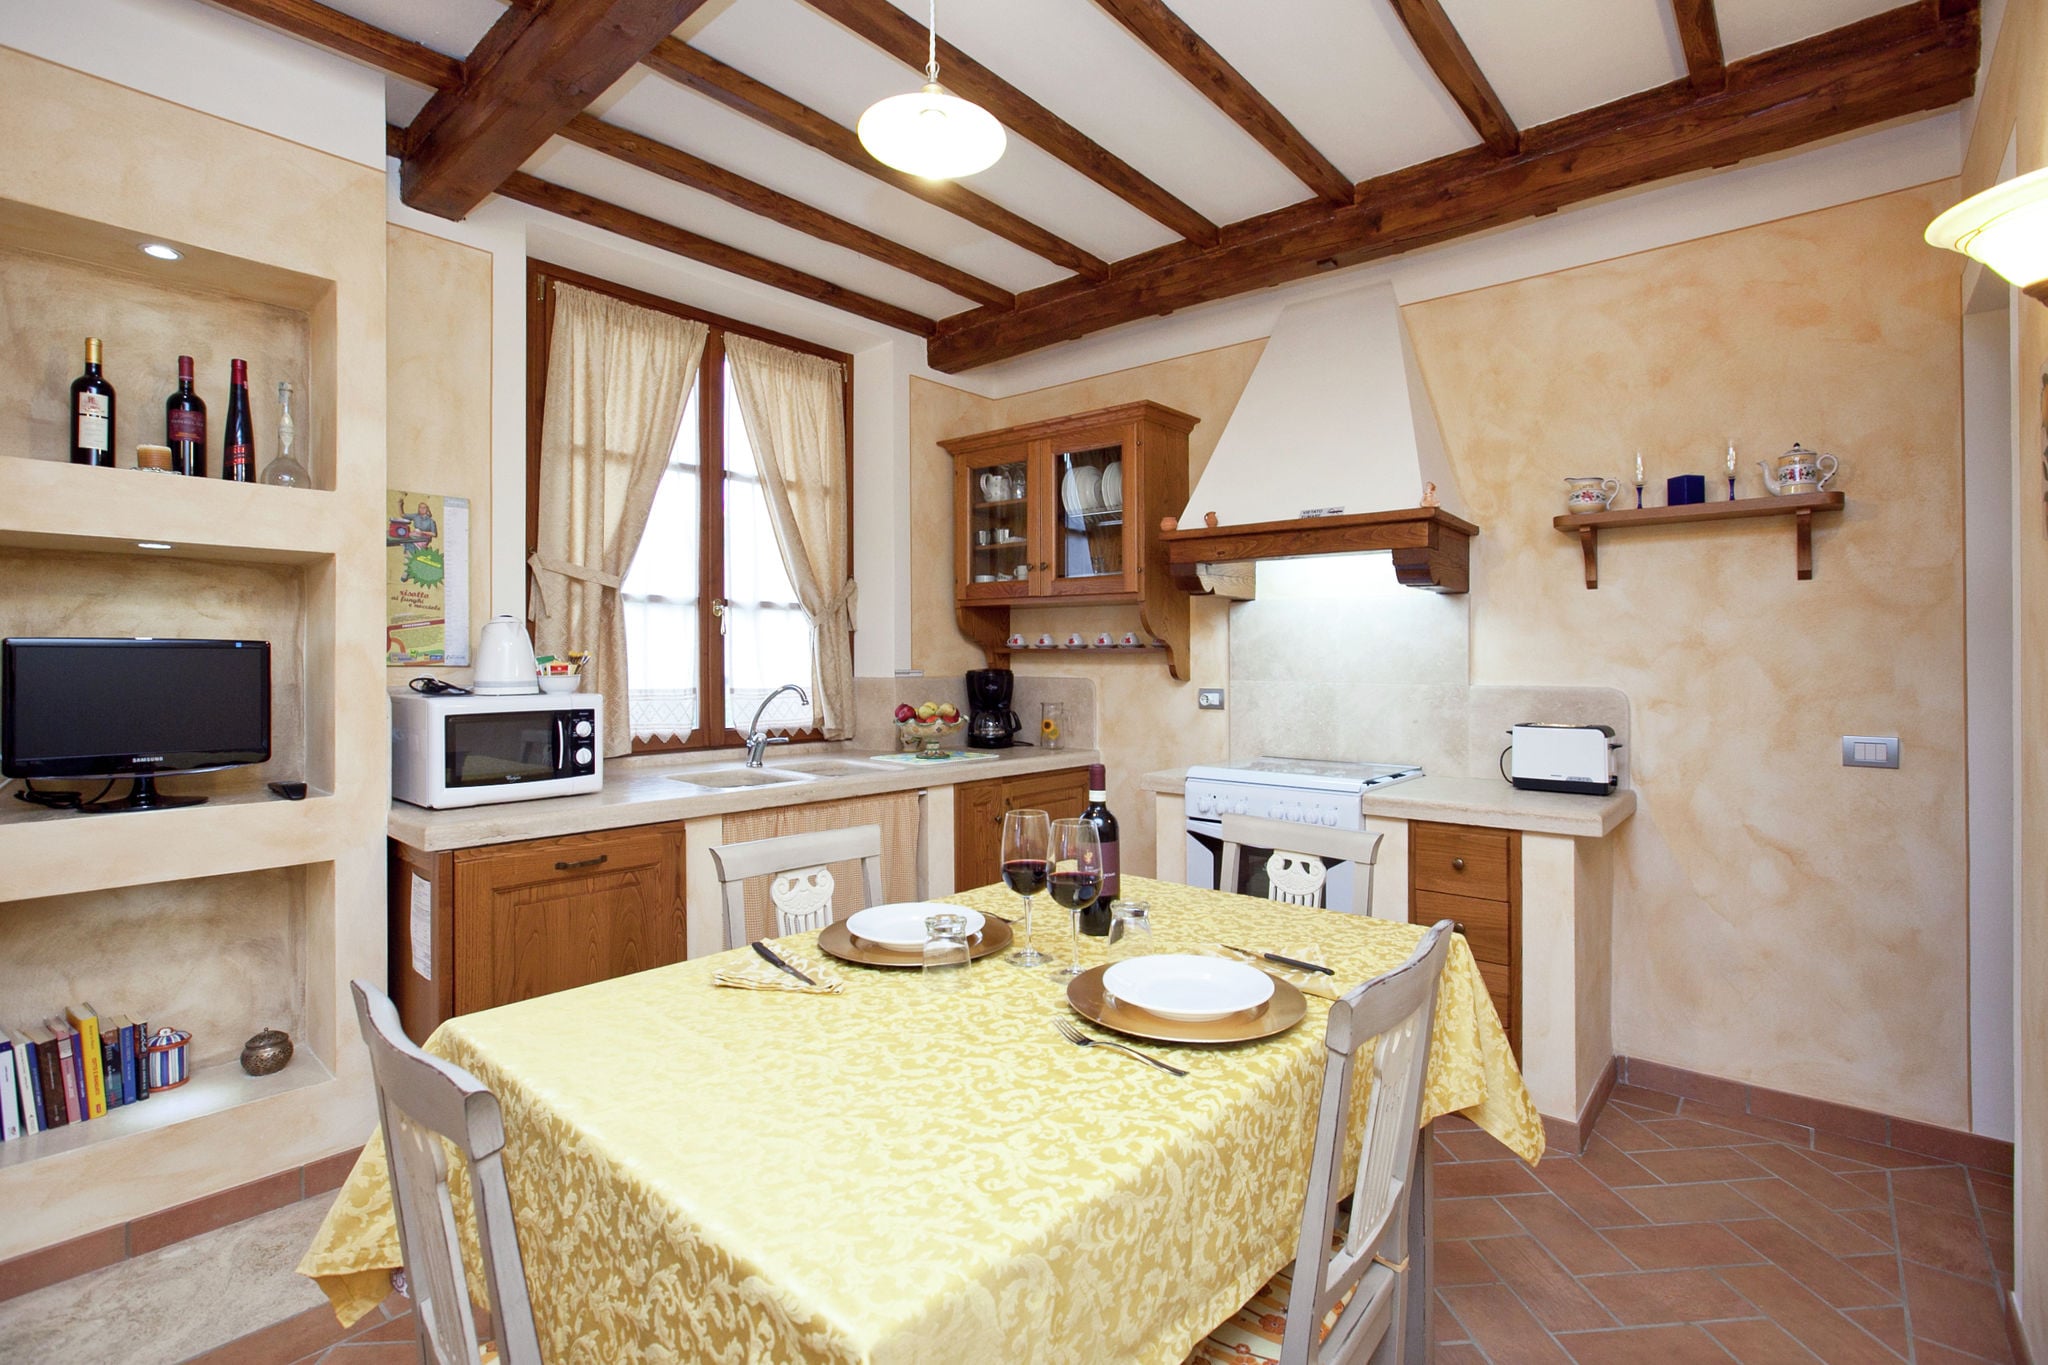 Appartement in Toscaanse stijl met uitzicht op de heuvels en dichtbij een dorpje